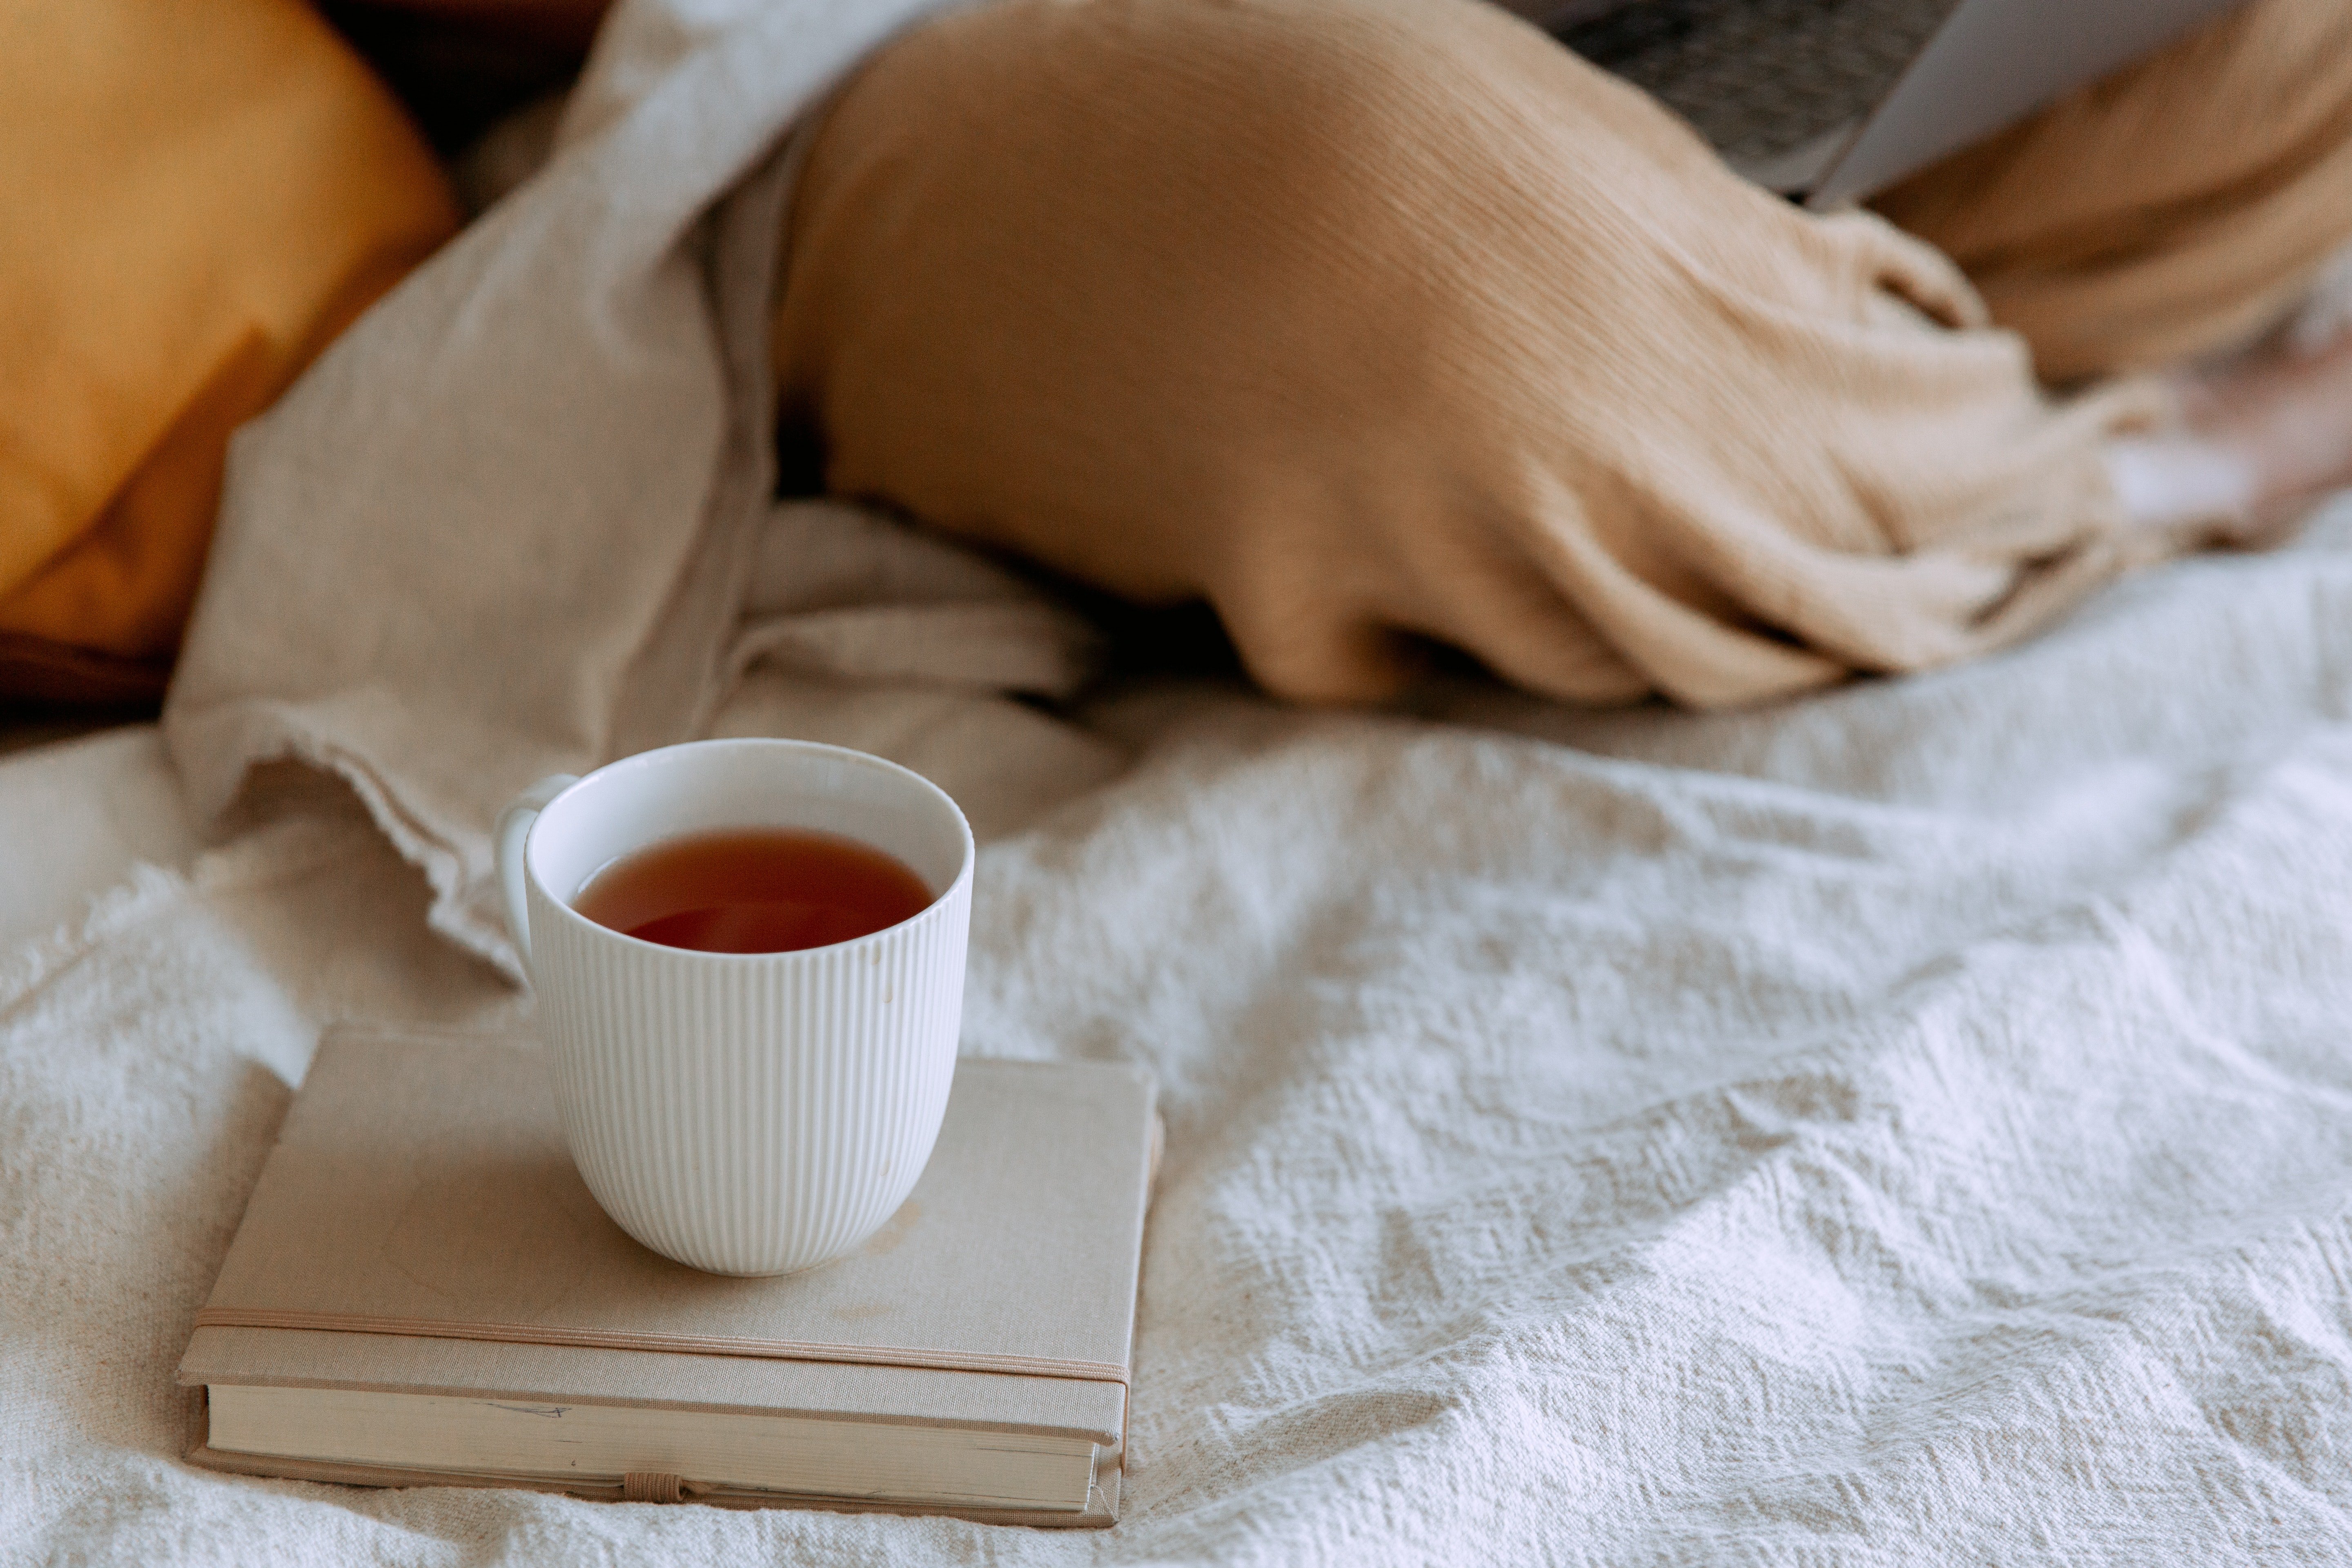 Ich machte mir eine Tasse Tee und legte mich wieder ins Bett. | Quelle: Pexel